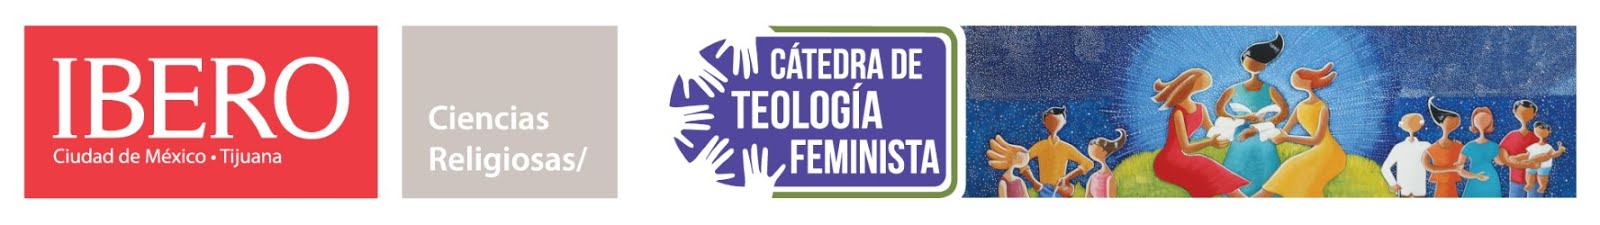 Cátedra de Teología Feminista, Ibero